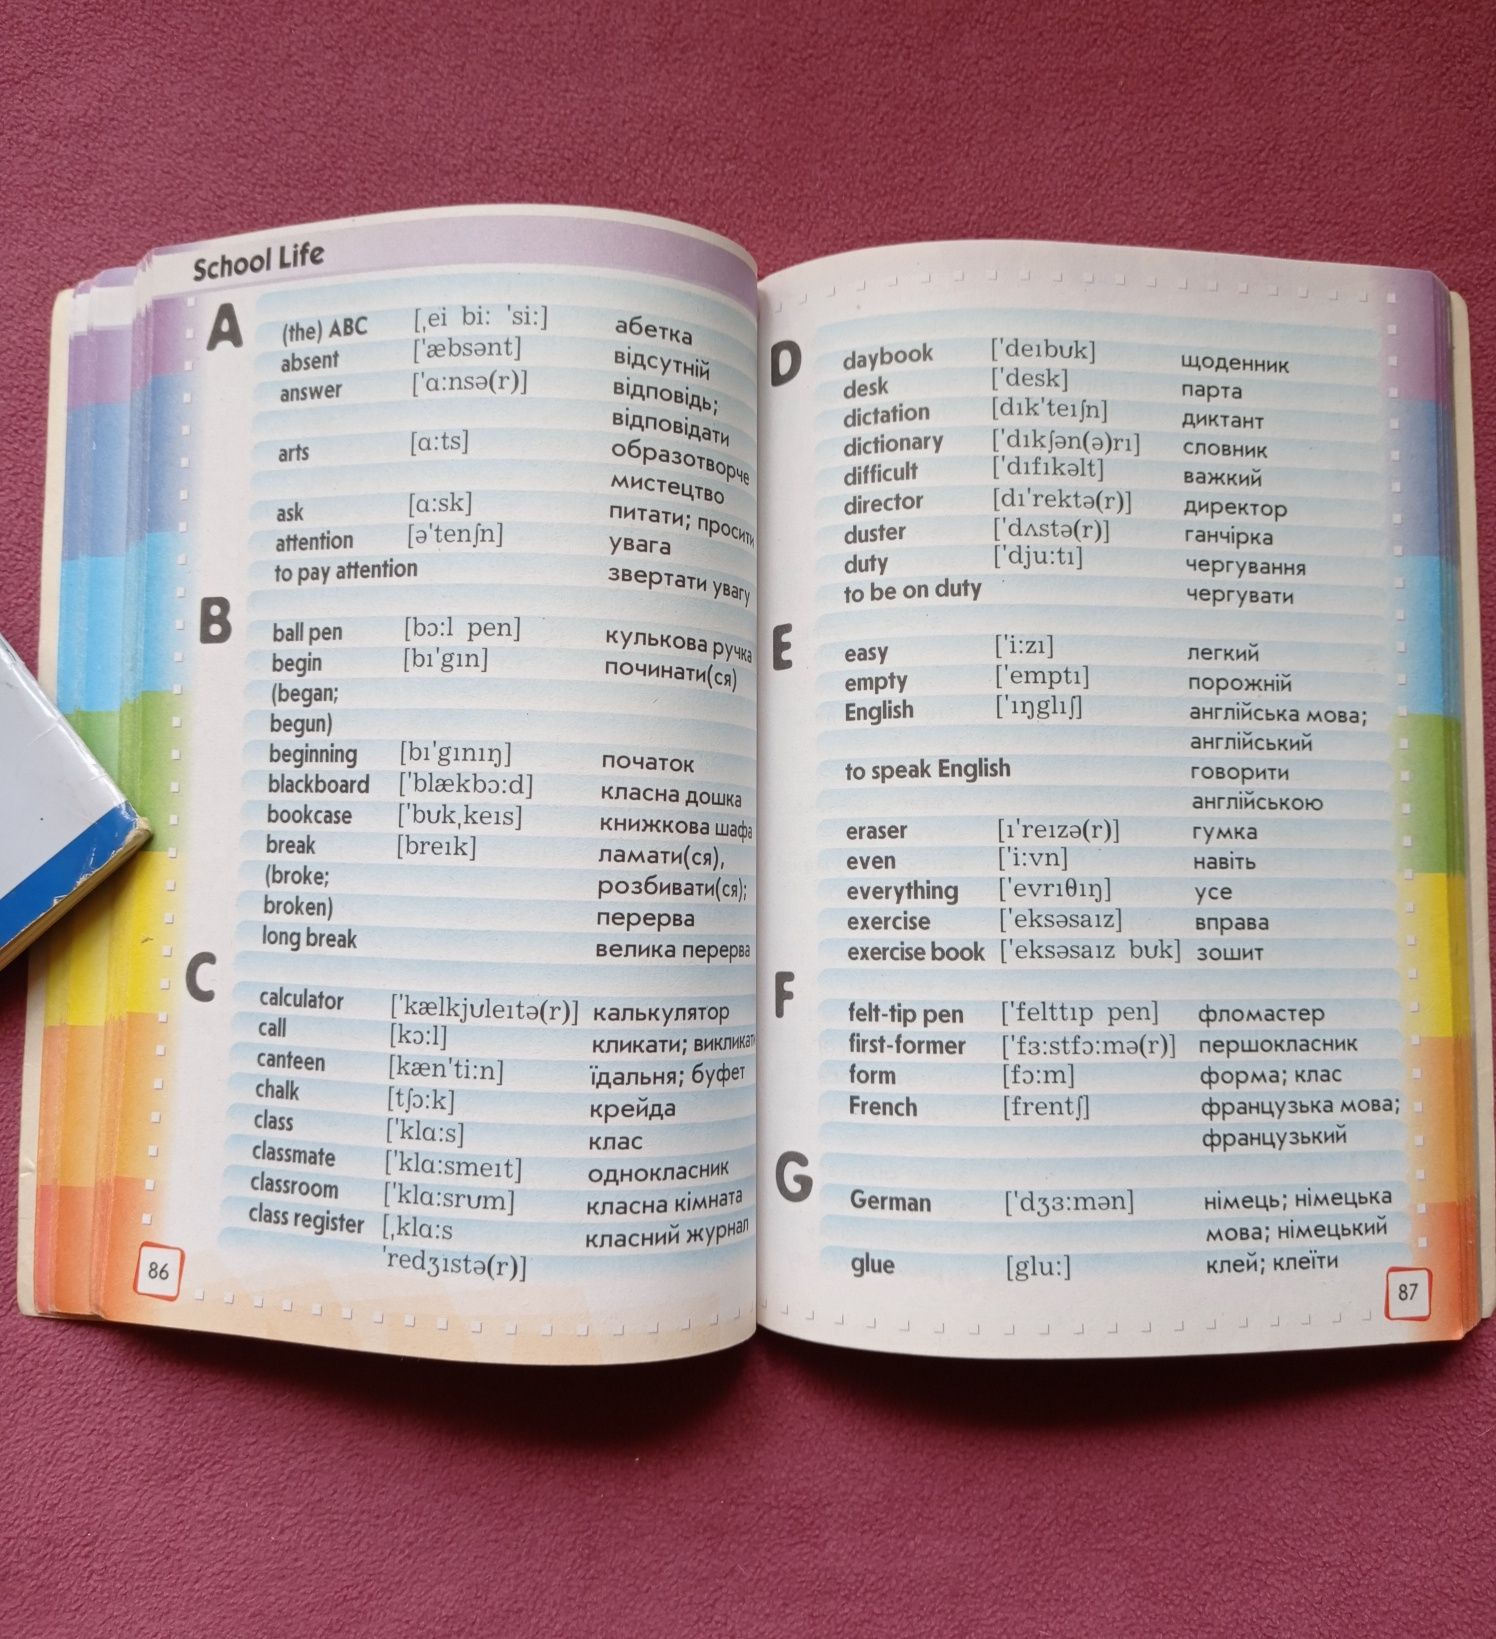 Учебник английского языка, иллюстрированный англо-украинский словарь